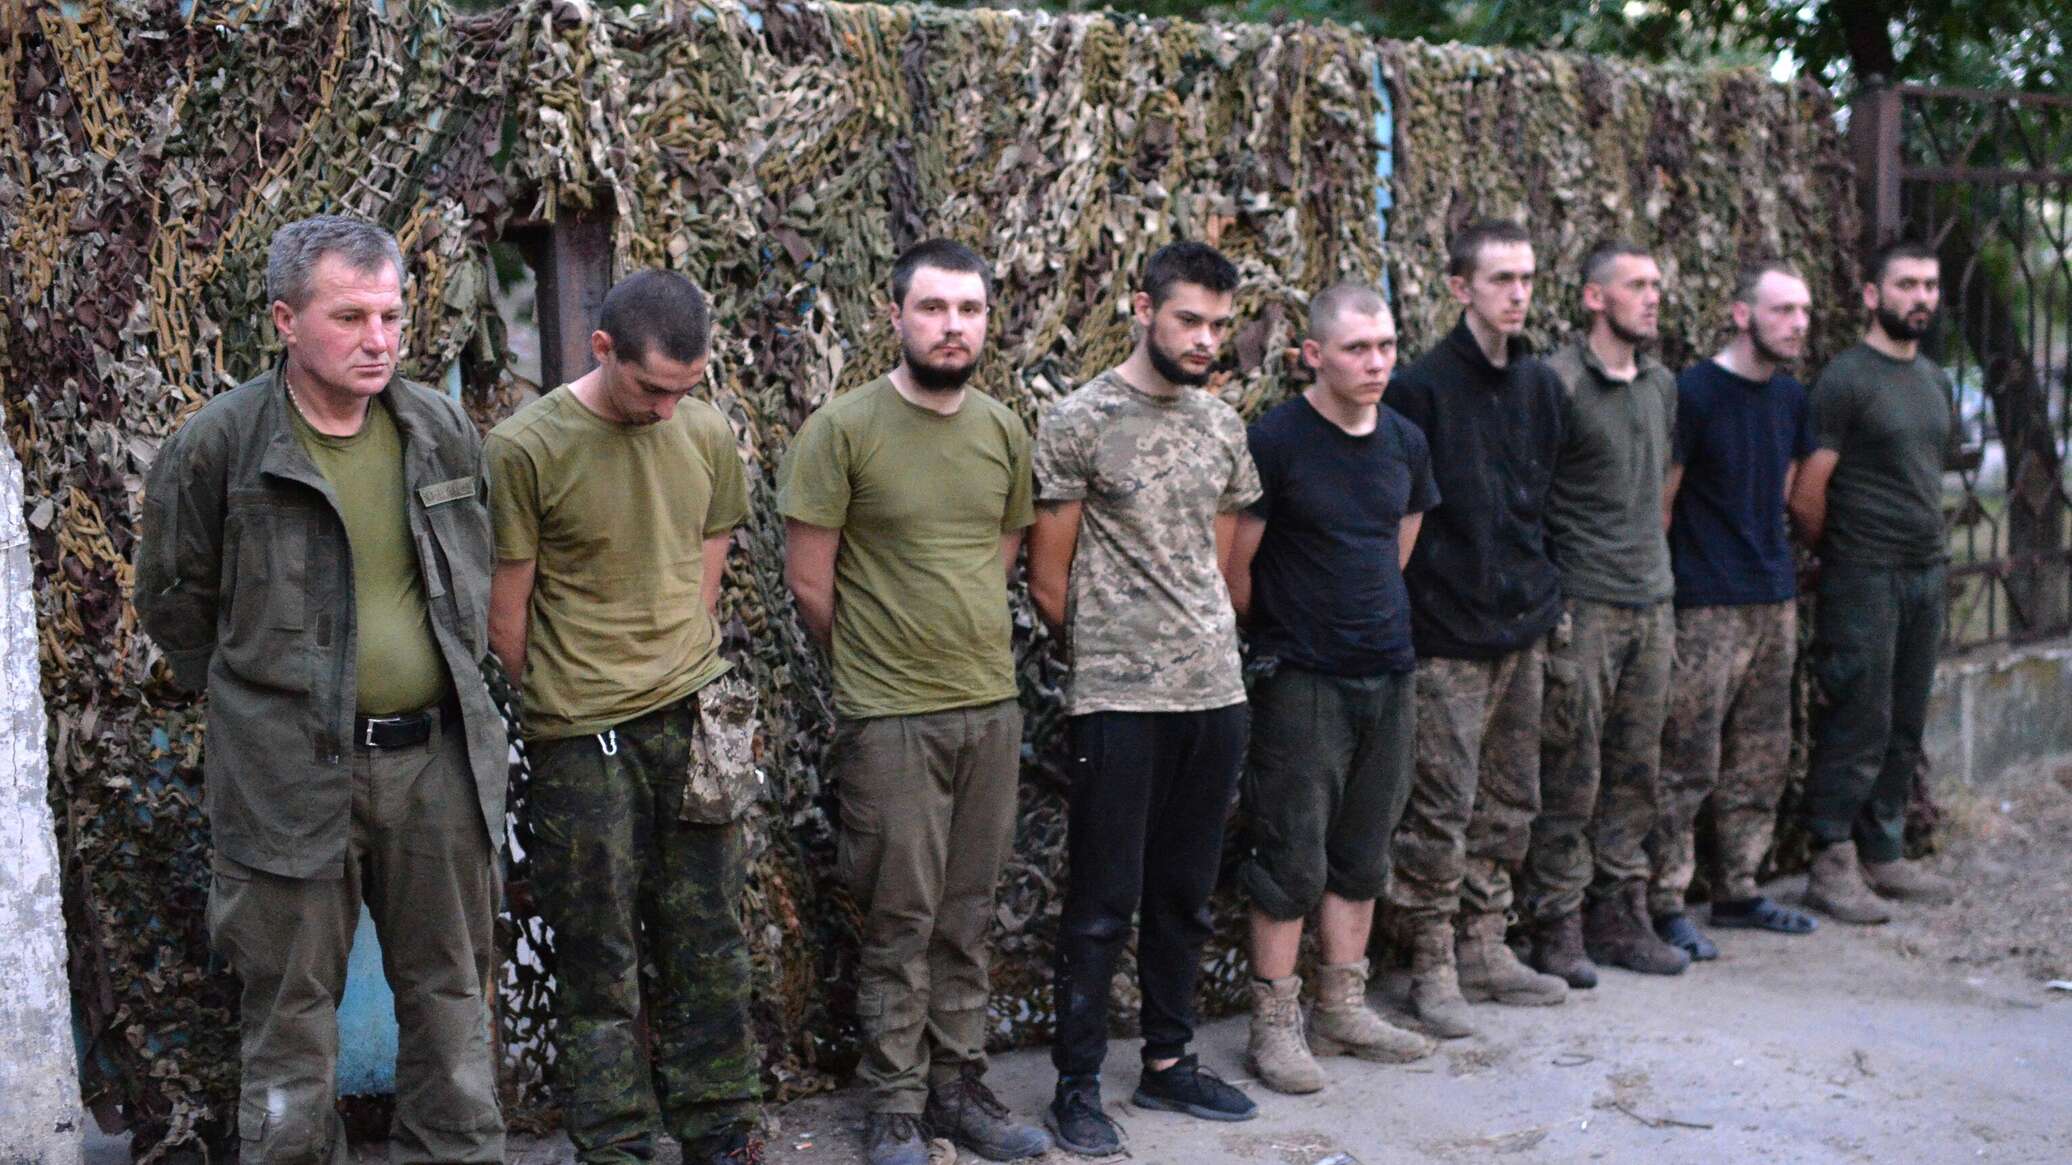 لحظة رفع جنود أوكرانيين "الرايات البيض" وتسليم أسلحتهم... فيديو